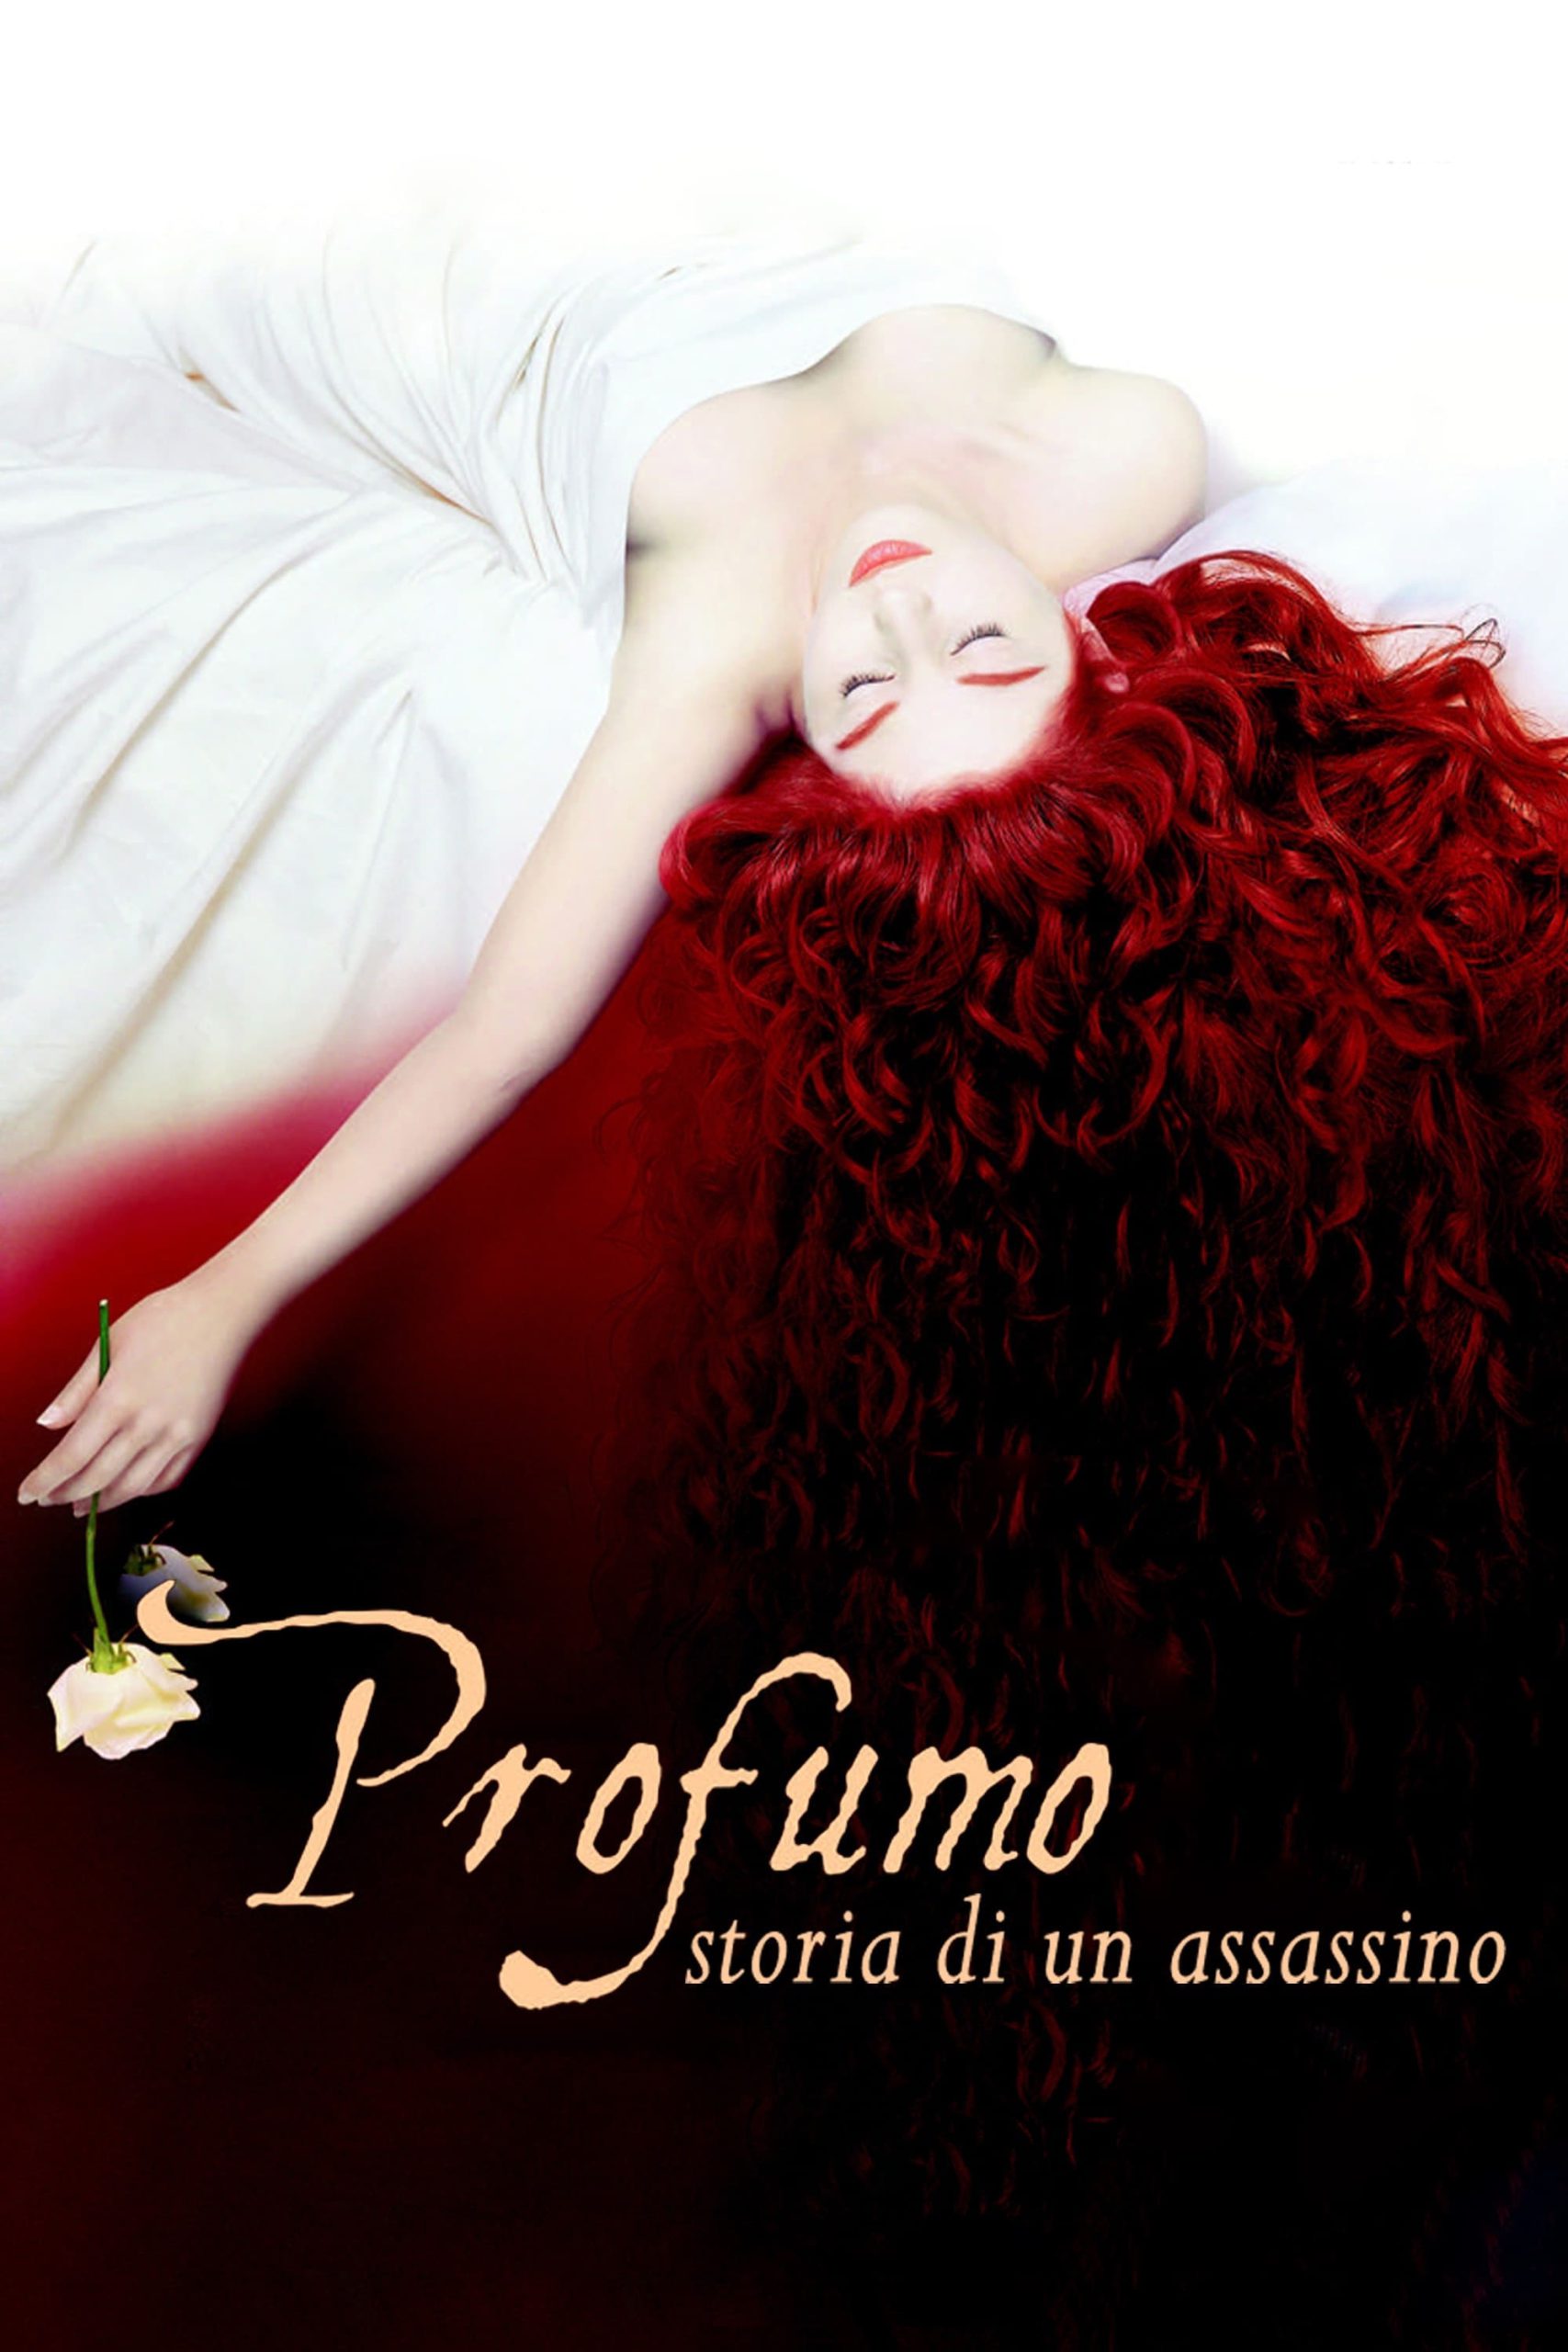 Profumo – Storia di un assassino [HD] (2006)